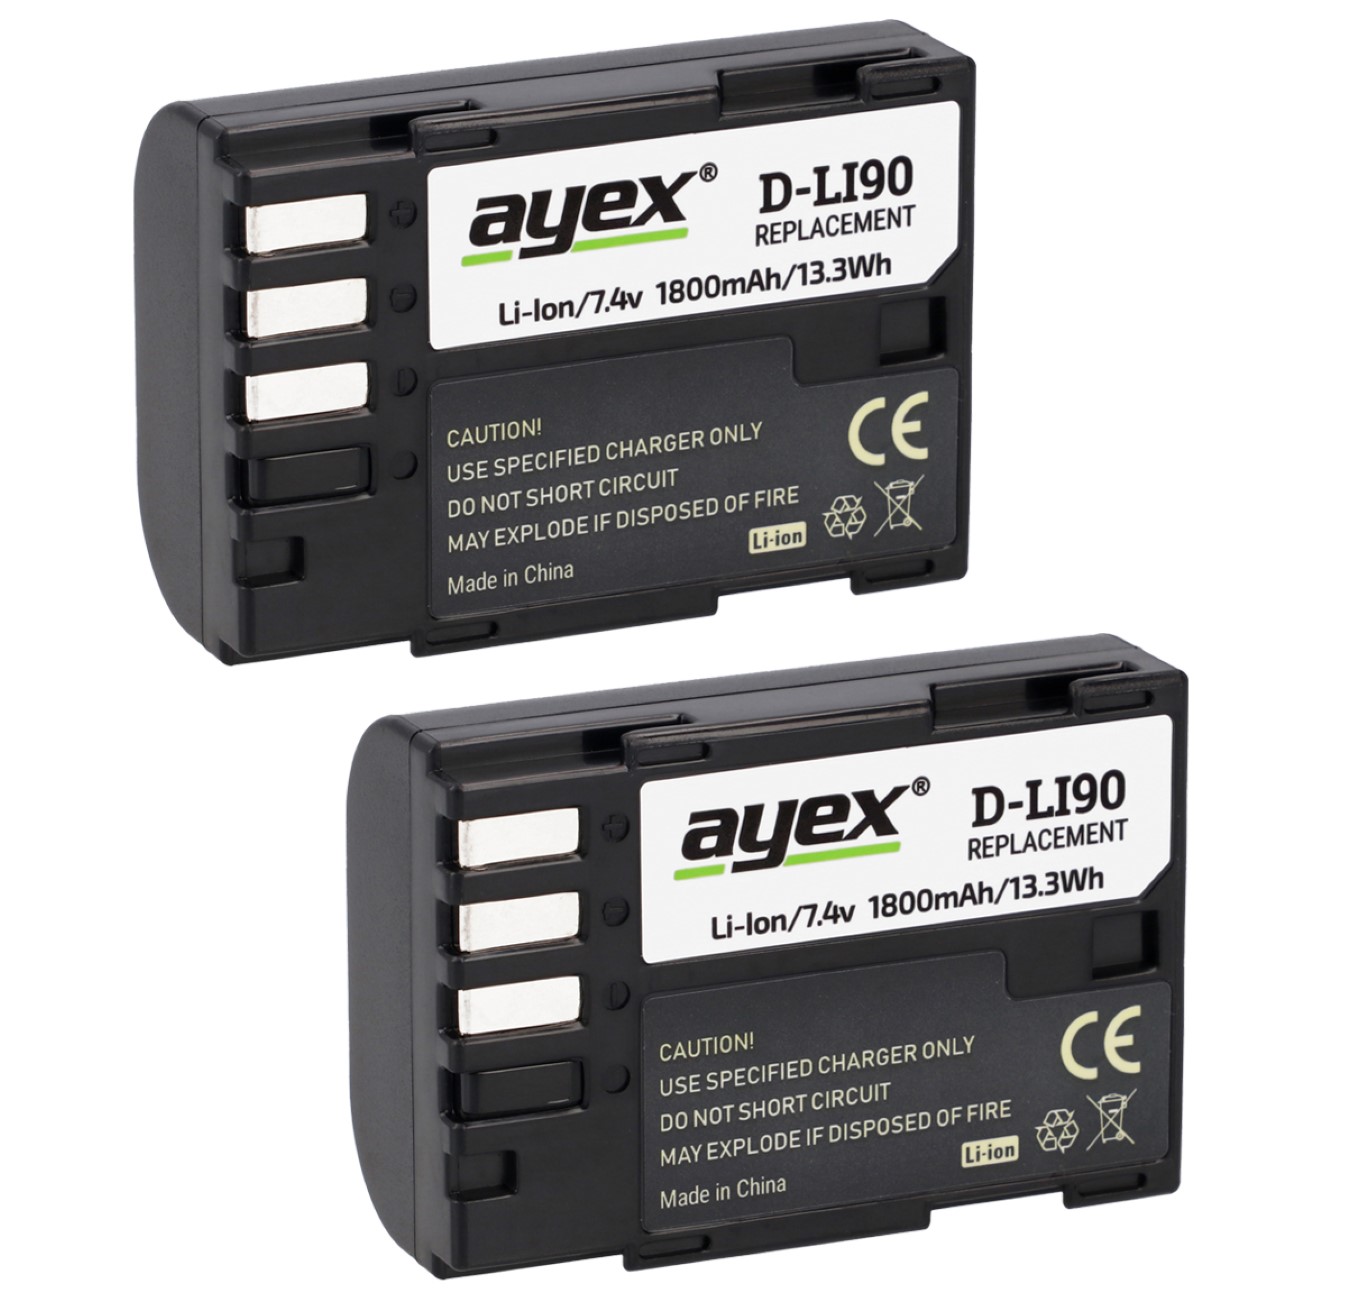 ayex Batteriegriff für Pentax K-7 K-5 K-5 II K-5 IIs ähnlich D-BG4 + 2 x ayex D-Li90 Akku